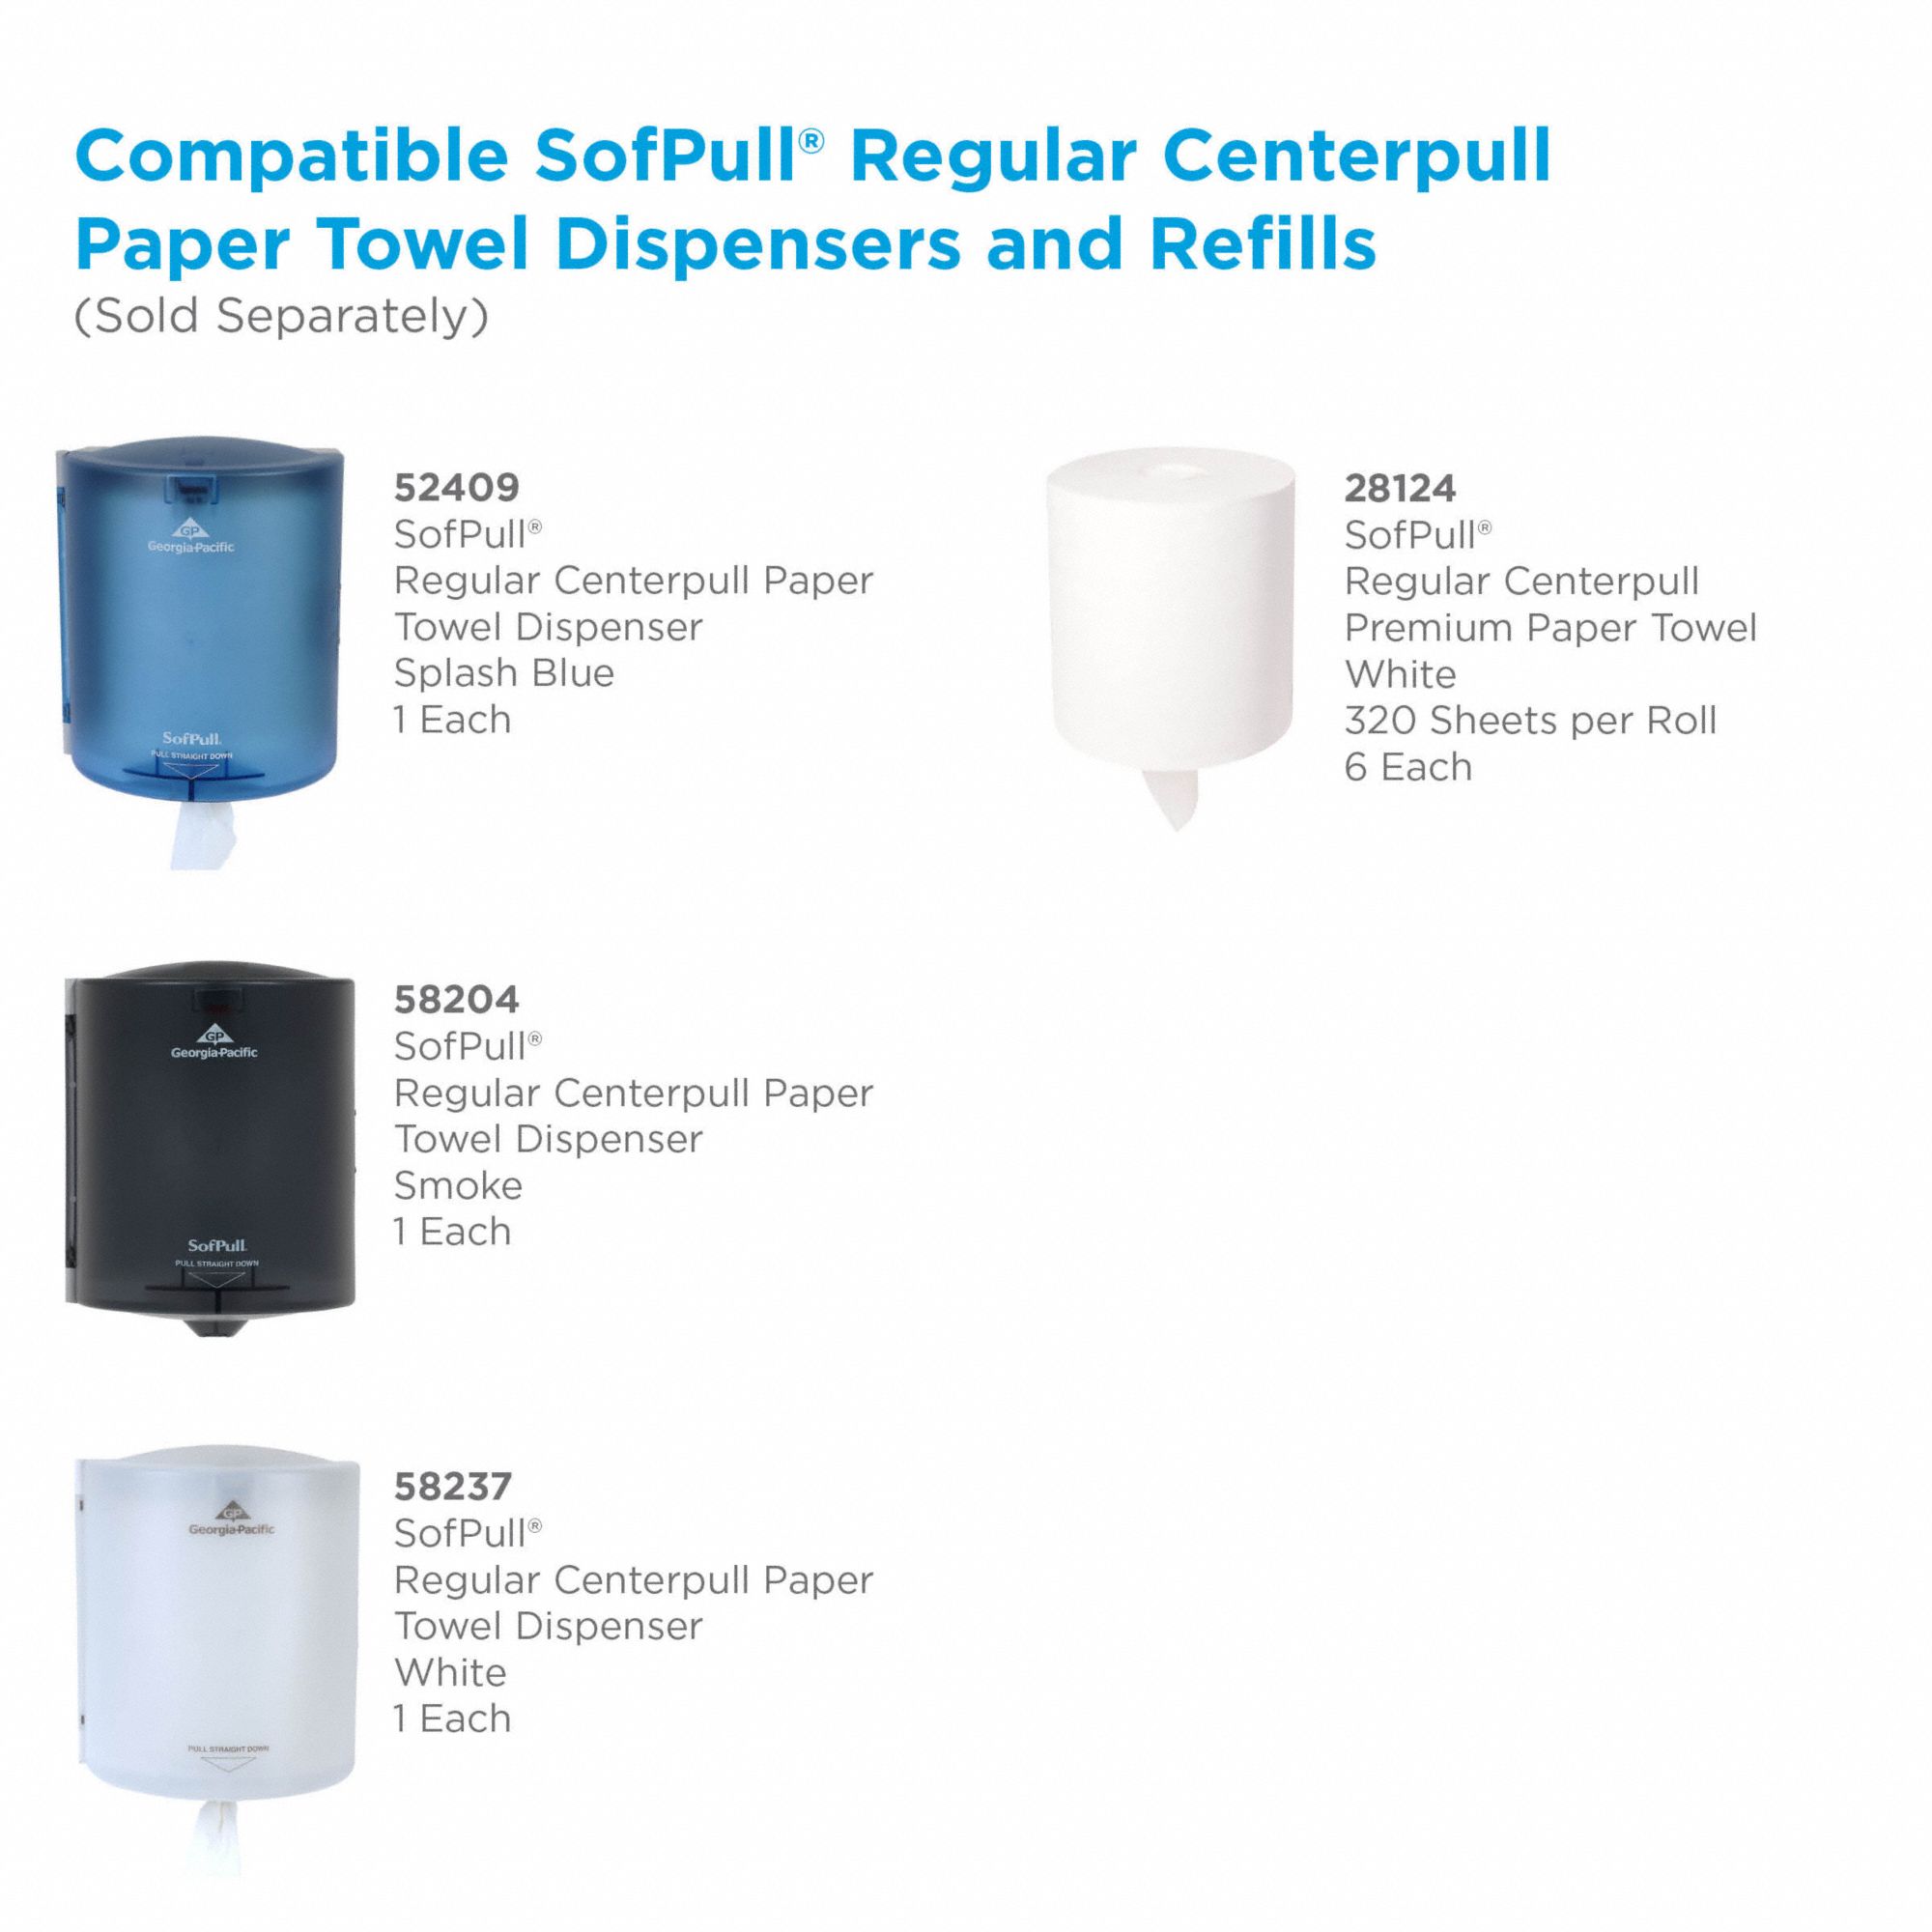 SofPull Centerpull Georgia-Pacific High Capacity Paper Towel Dispenser Storage 